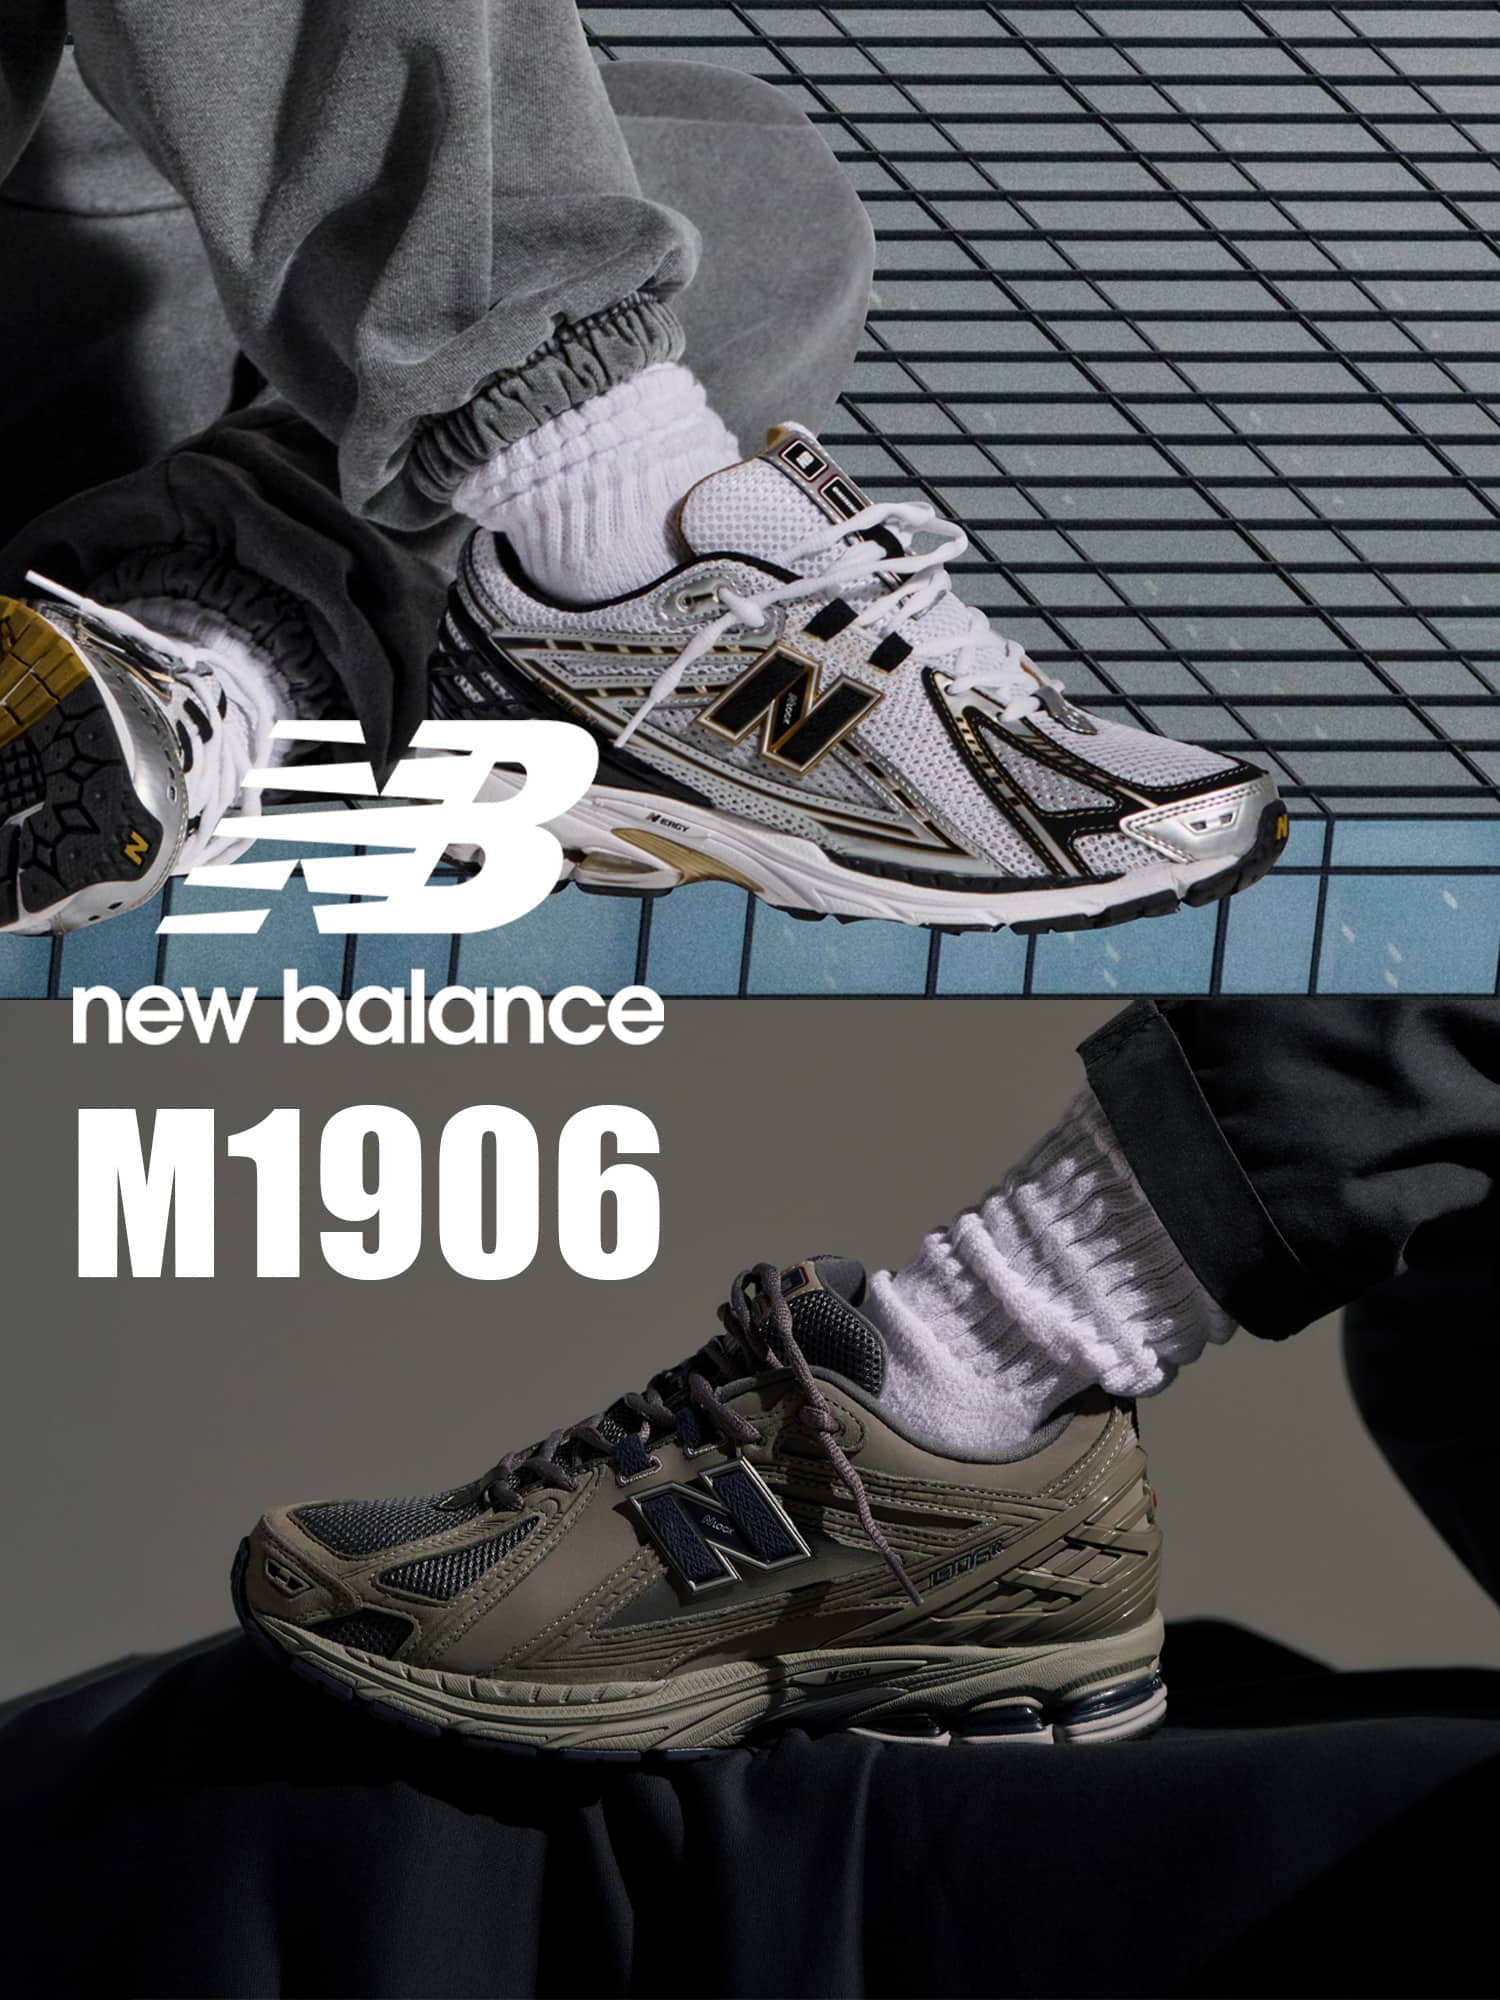 ニューバランス M1906RA 新品箱付き スニーカー 靴 メンズ オンライン販促品